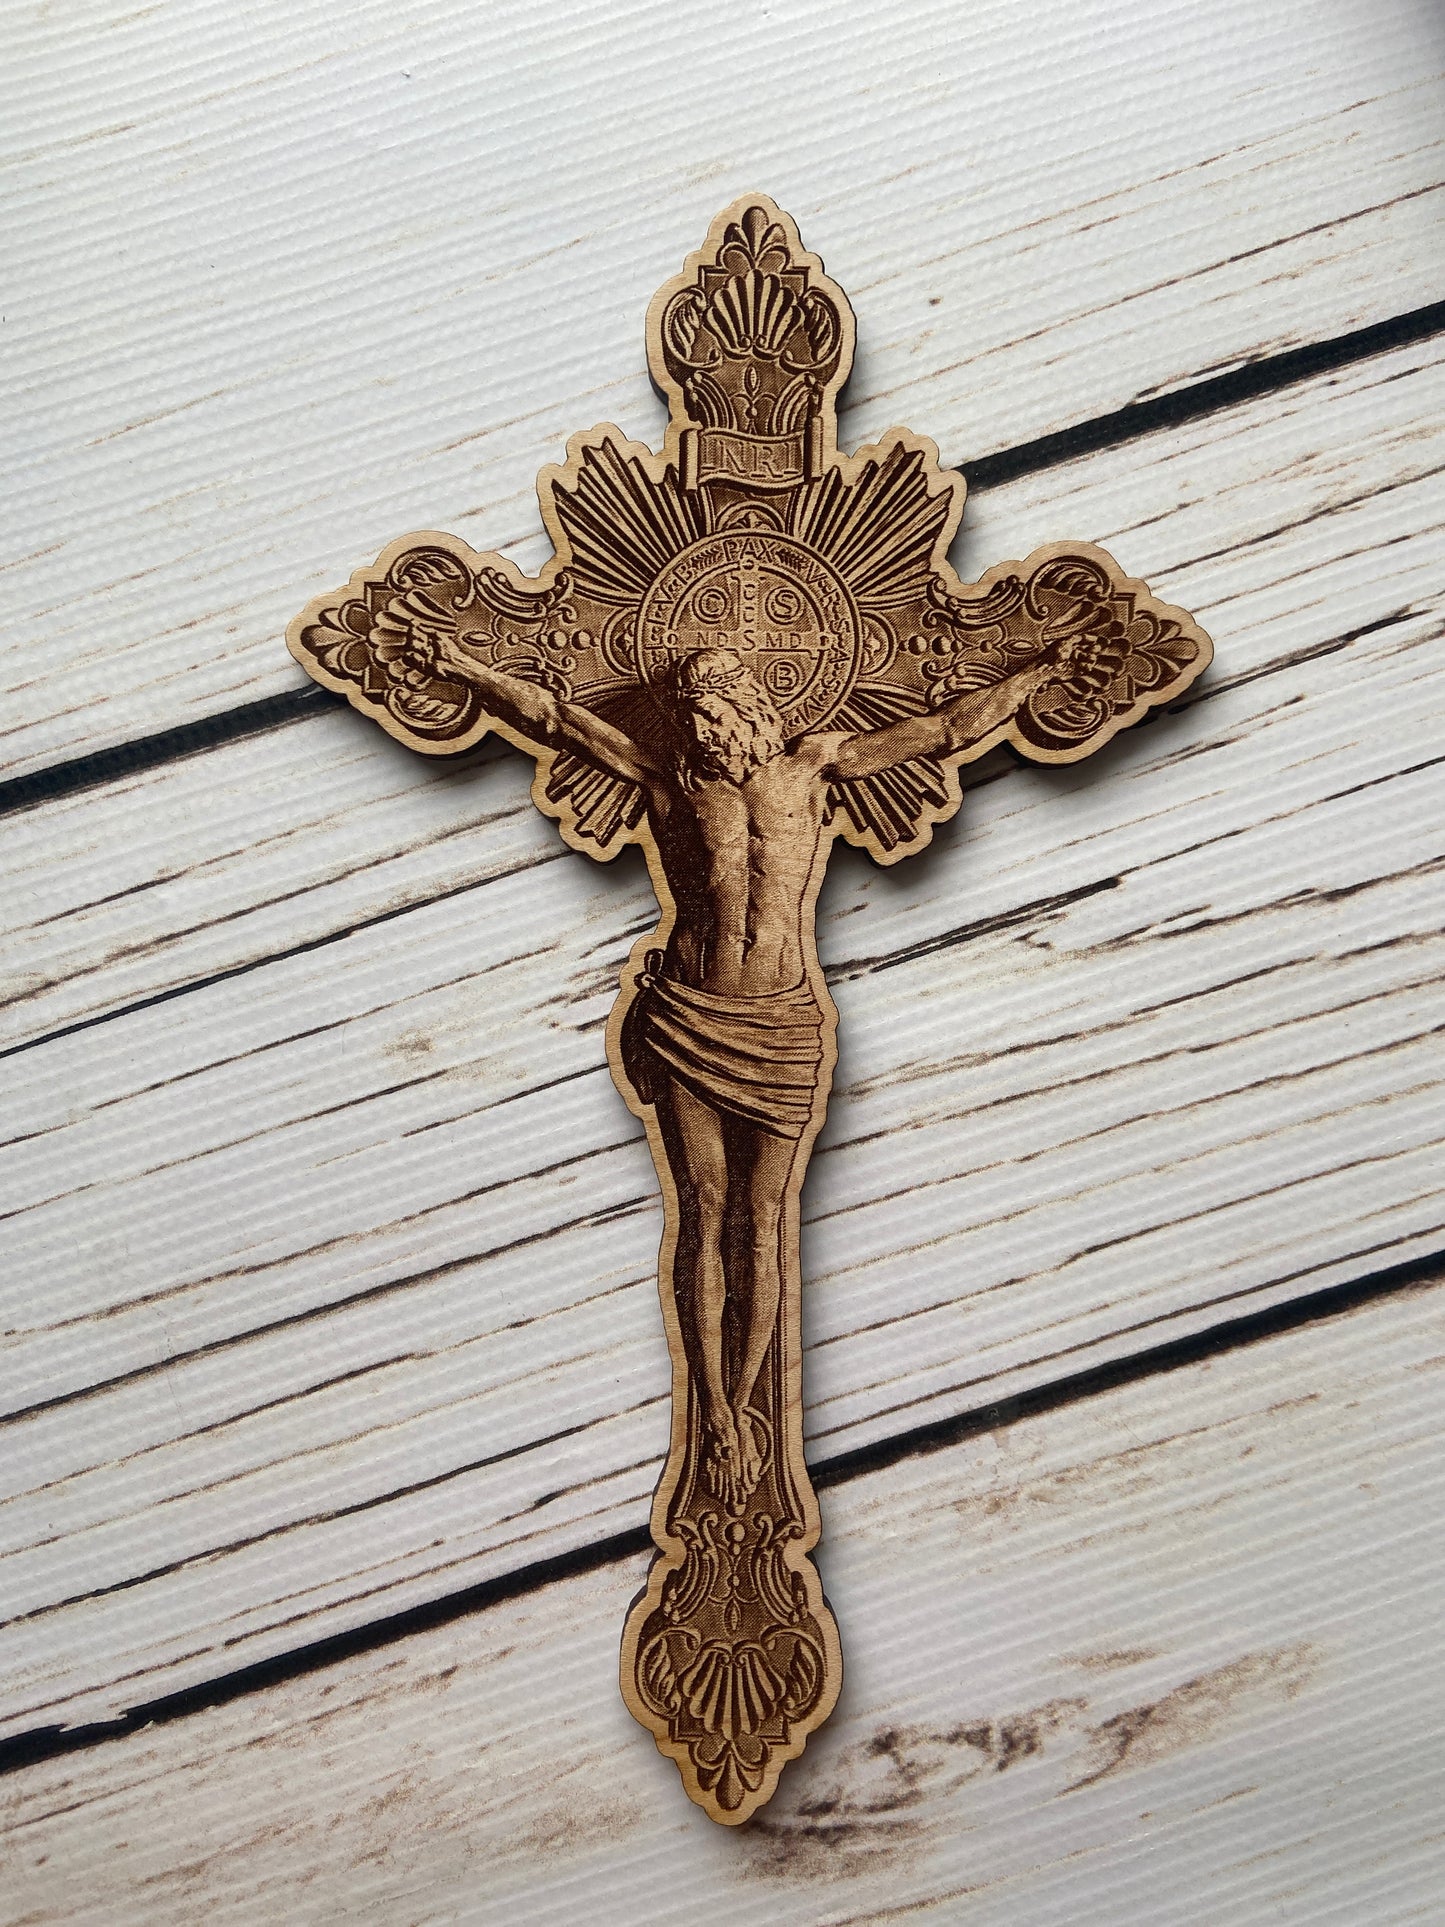 3D looking Engraved Jesus on Cross